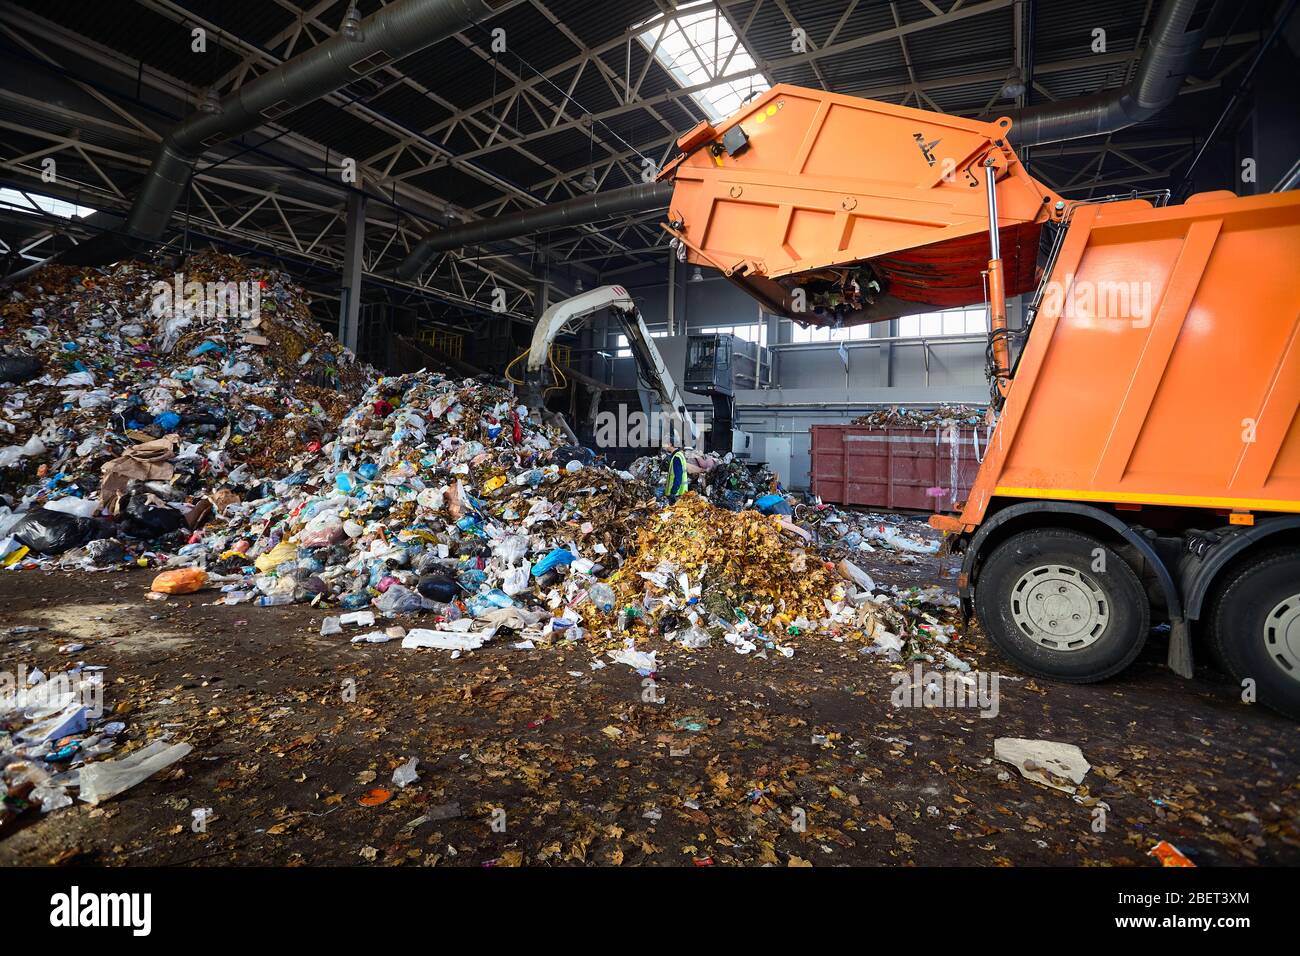 GRODNO, BIELORRUSIA - OCTUBRE 2018: Planta de reciclaje de residuos proceso de carga de basura de camiones de basura. El manipulador carga basura en el transportador para más Foto de stock